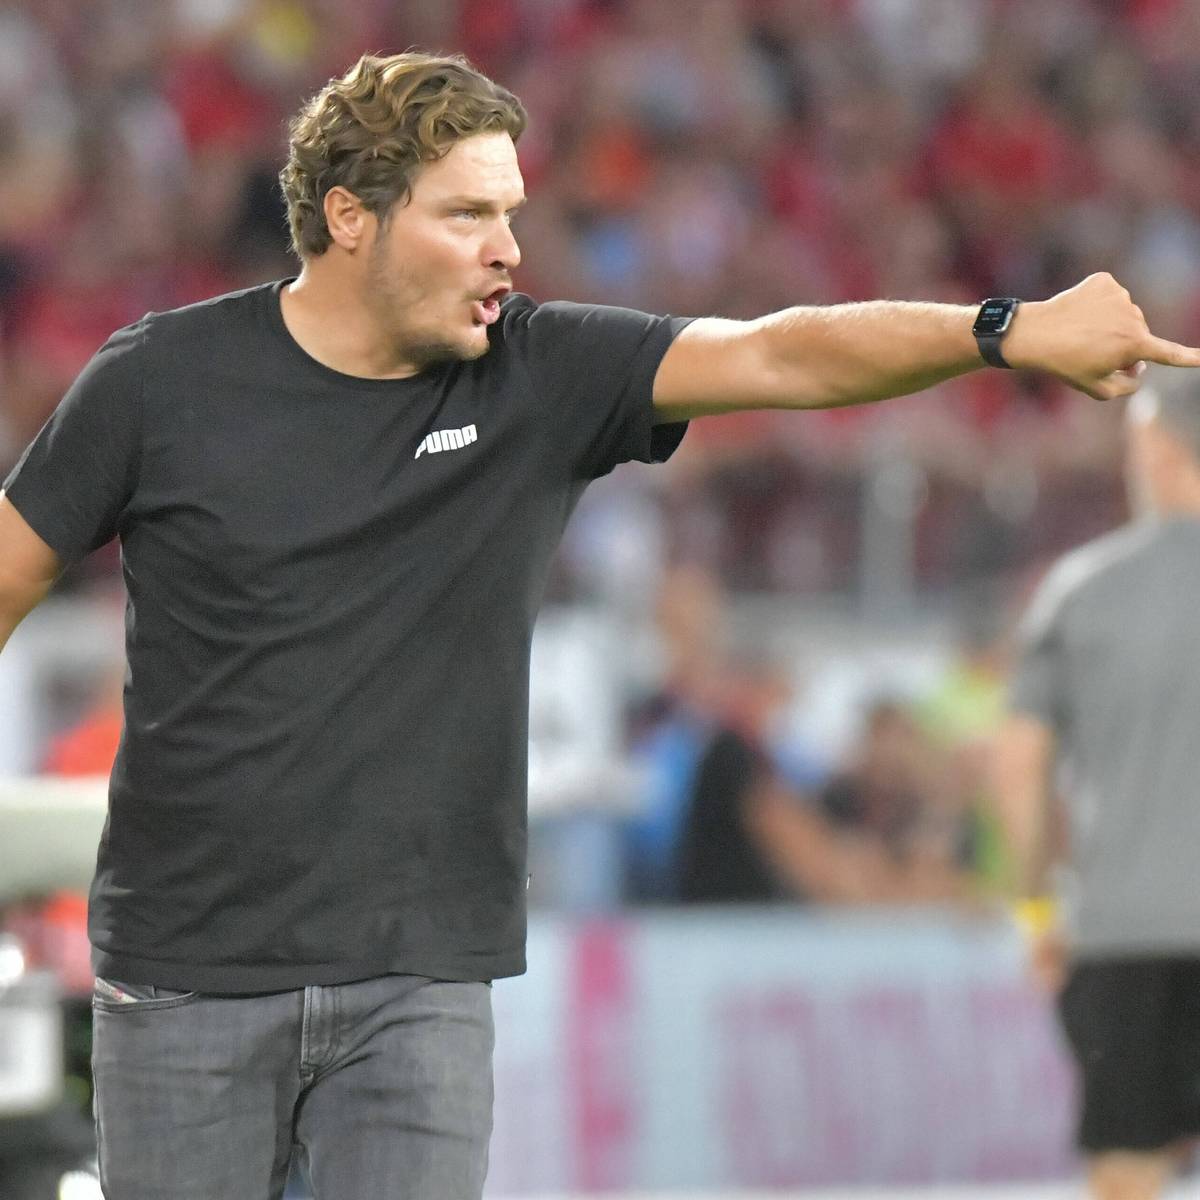 BVB-Coach Edin Terzic peilt einen Rekord an. Alphonso Davies könnte an Hansi Flick vorbeiziehen. SPORT1 hat die Rekorde, Jubiläen, Bilanzen und unheimlichen Serien zum 3. Bundesliga-Spieltag.